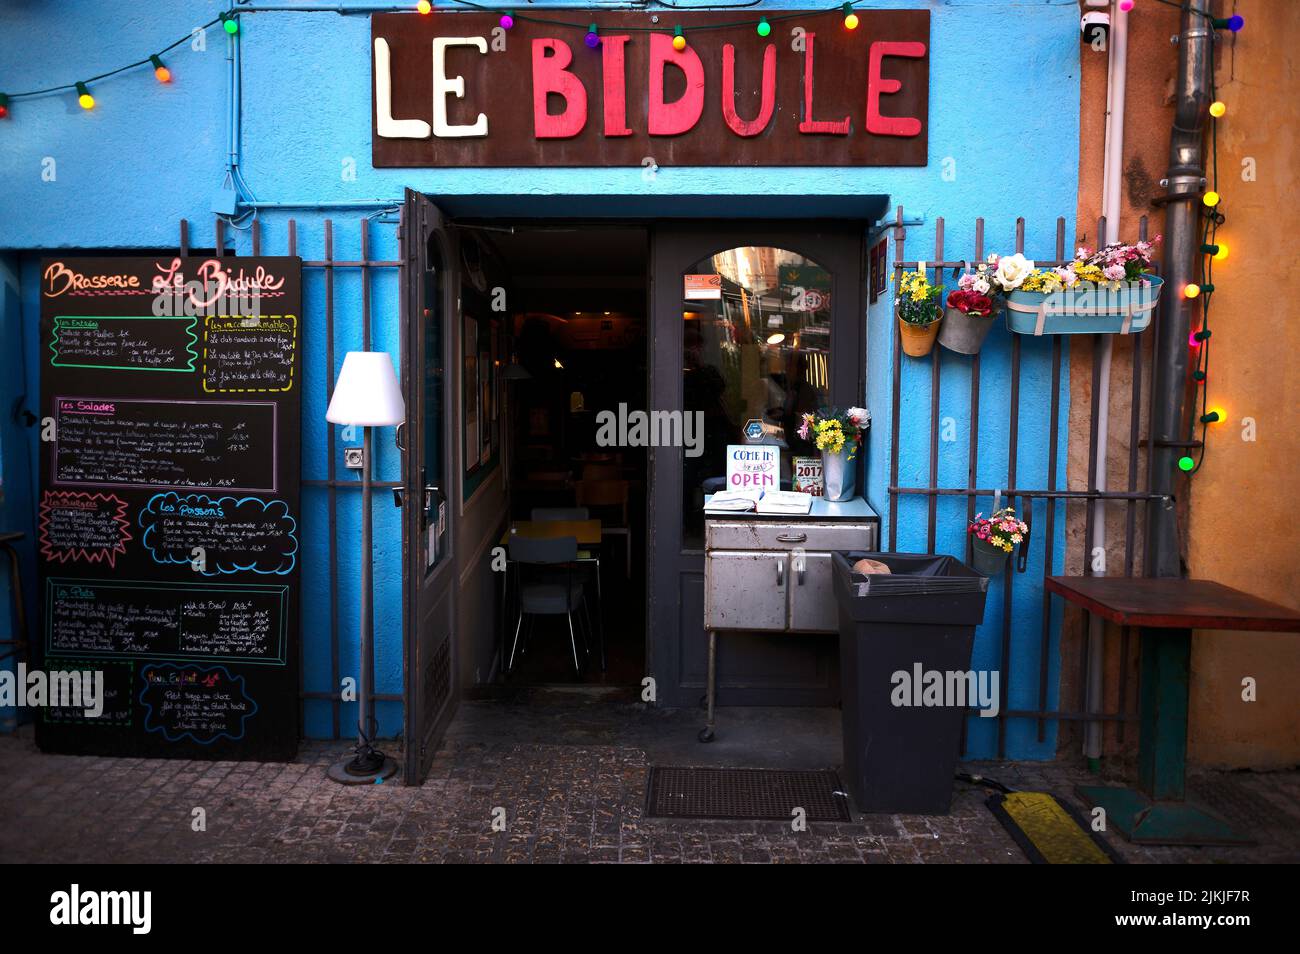 Restaurant, Brasserie Le Bidule, Place des Cardeurs, Aix-en-Provence, Bouches-du-Rhône, Provence-Alpes-Côte d'Azur, France Stock Photo